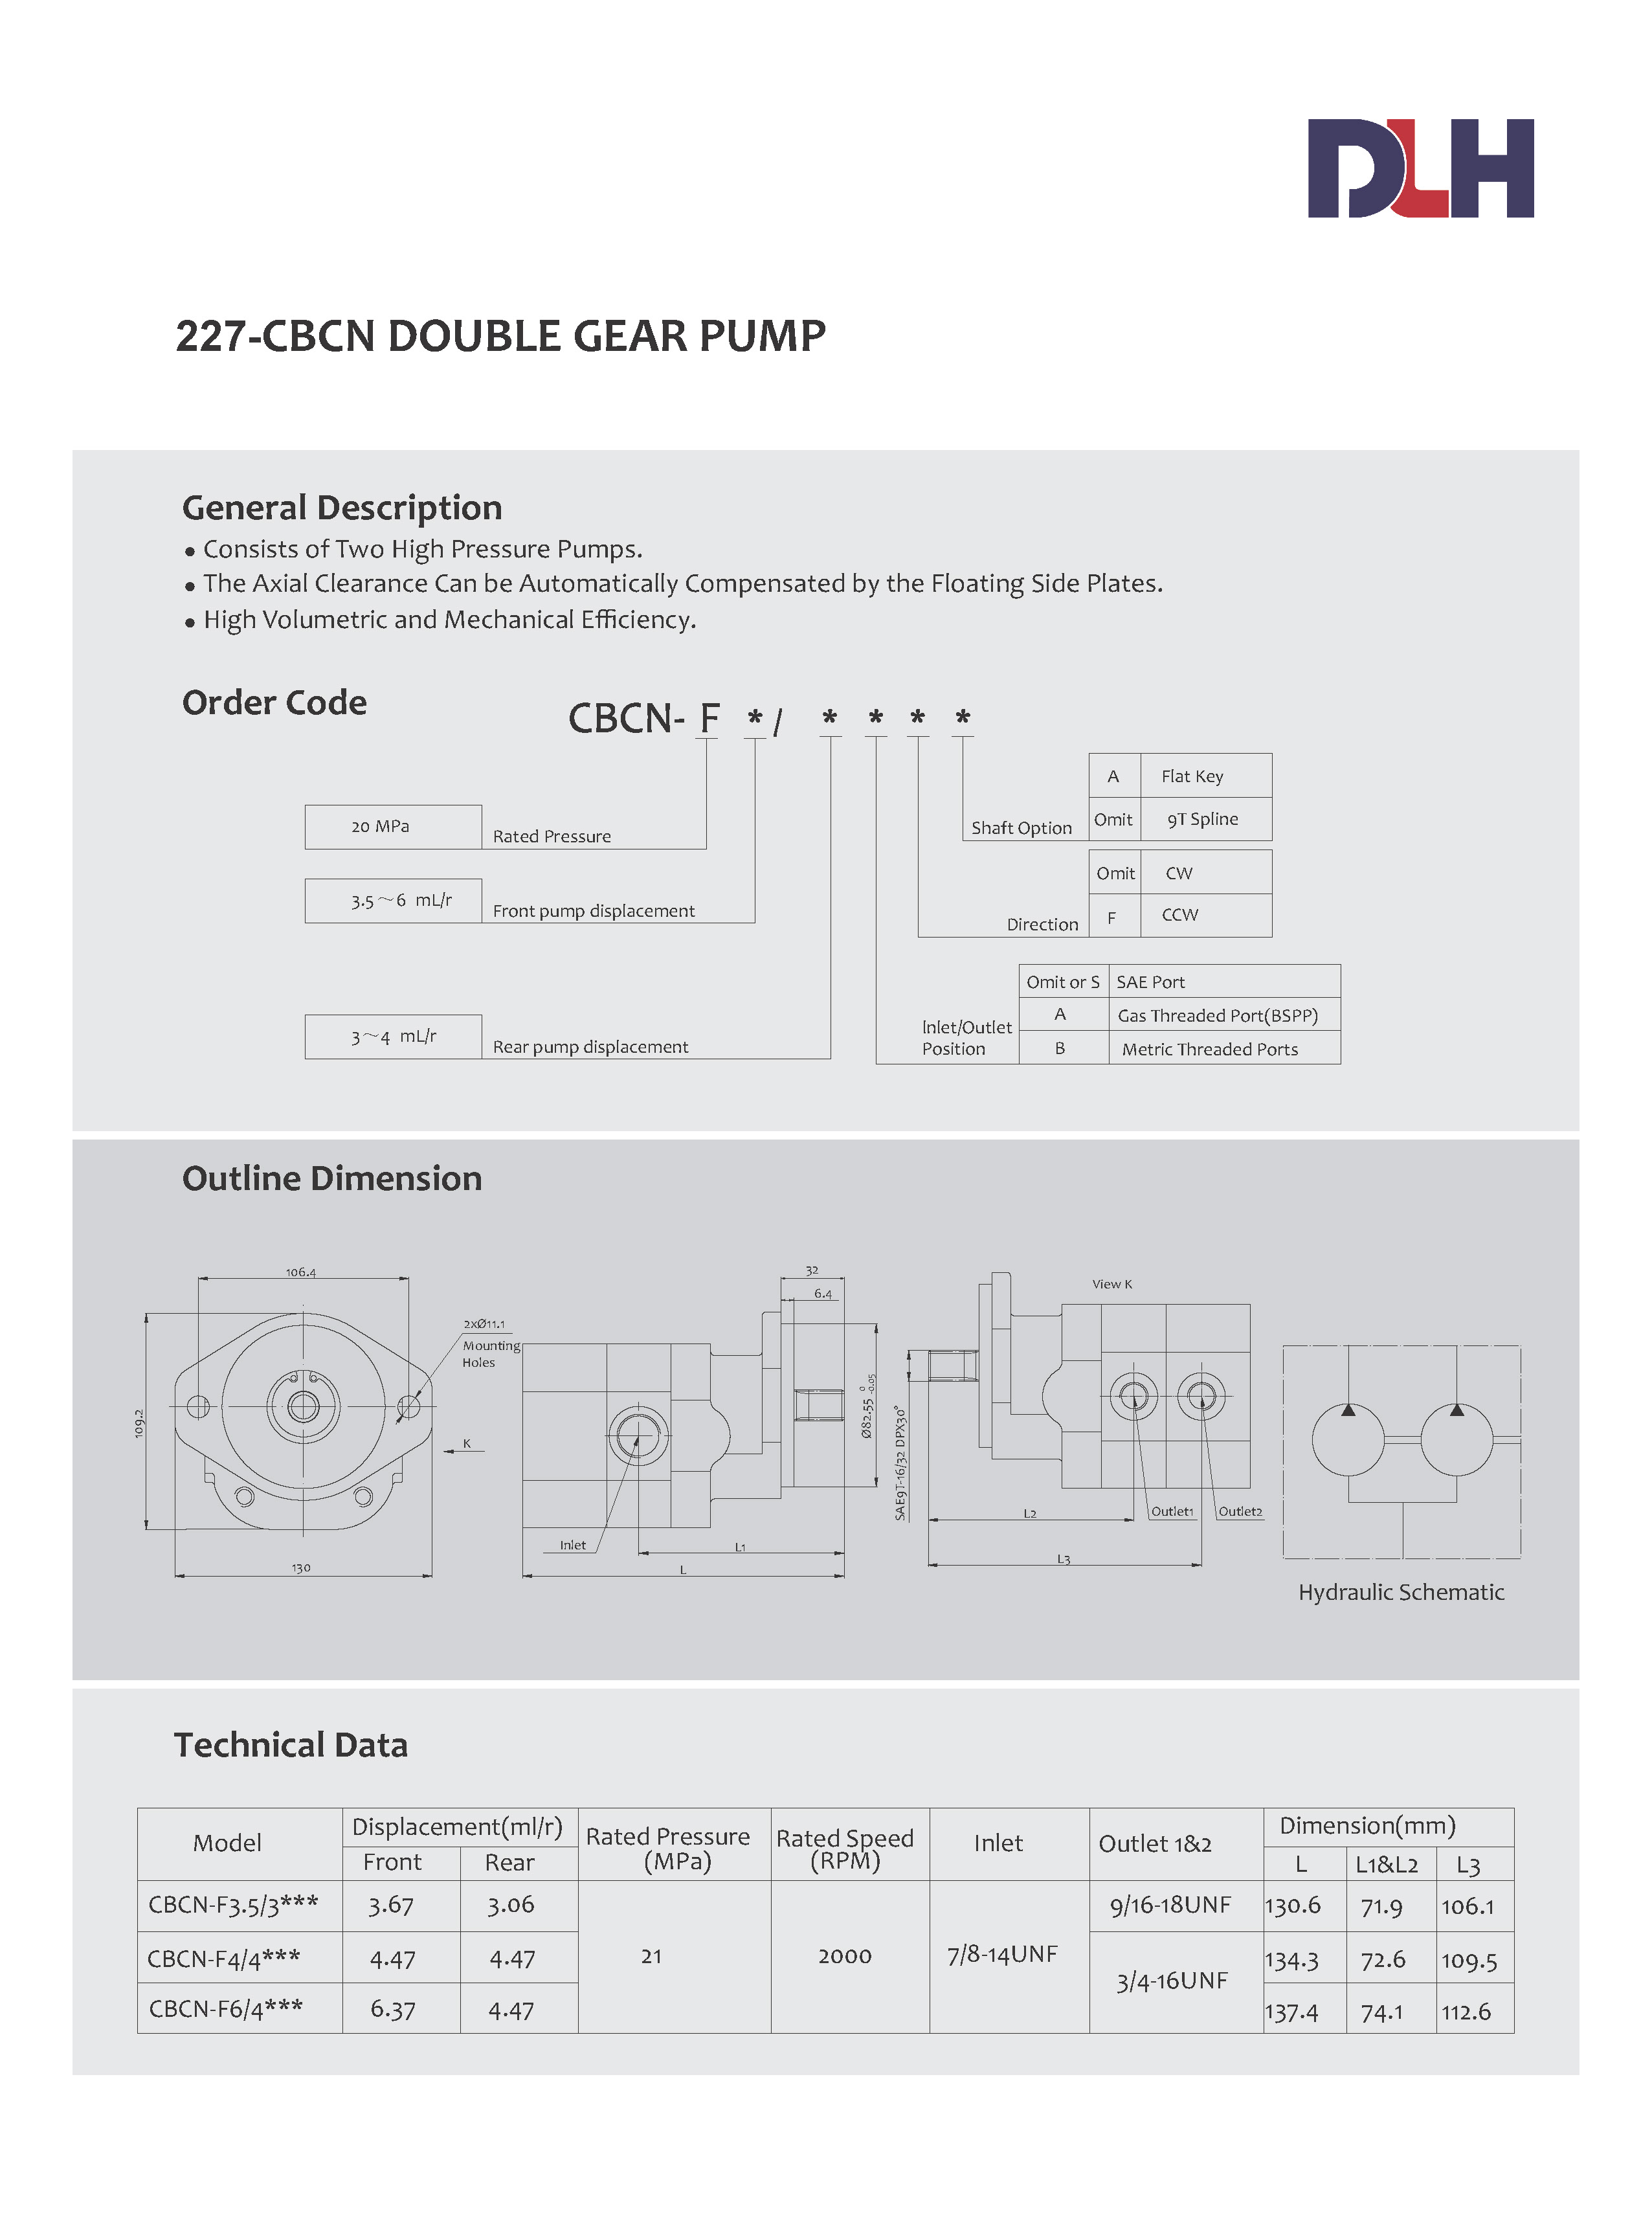 CBCN Double Gear pumps